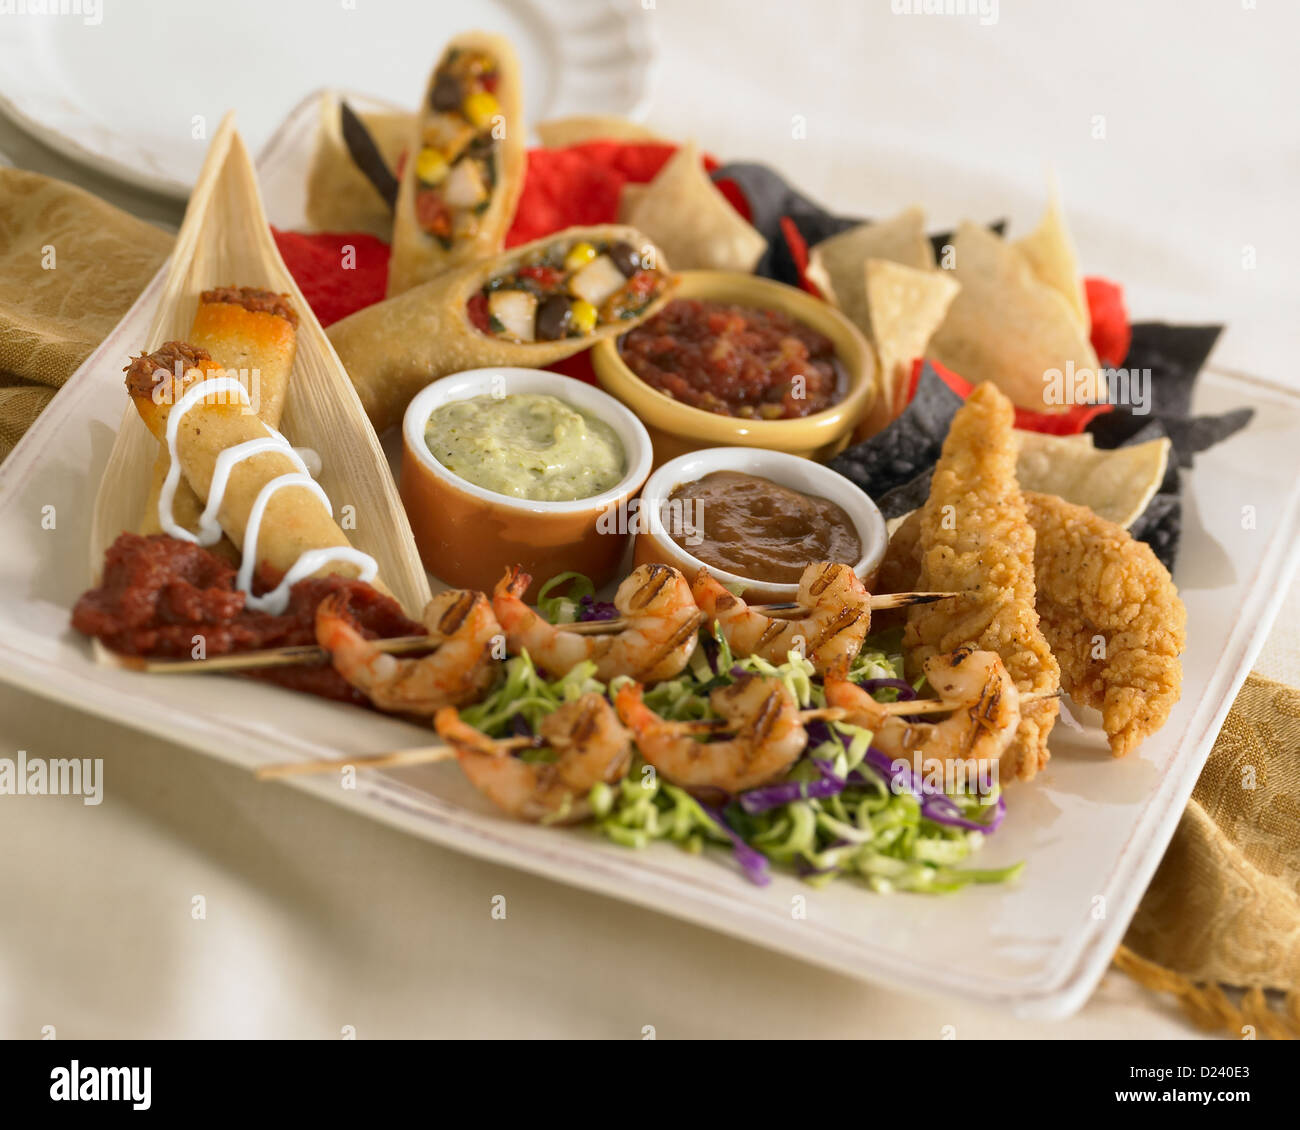 Plato aperitivo mexicano con brocheta de pollo, camarones, taquitos, patatas fritas y salsas Foto de stock